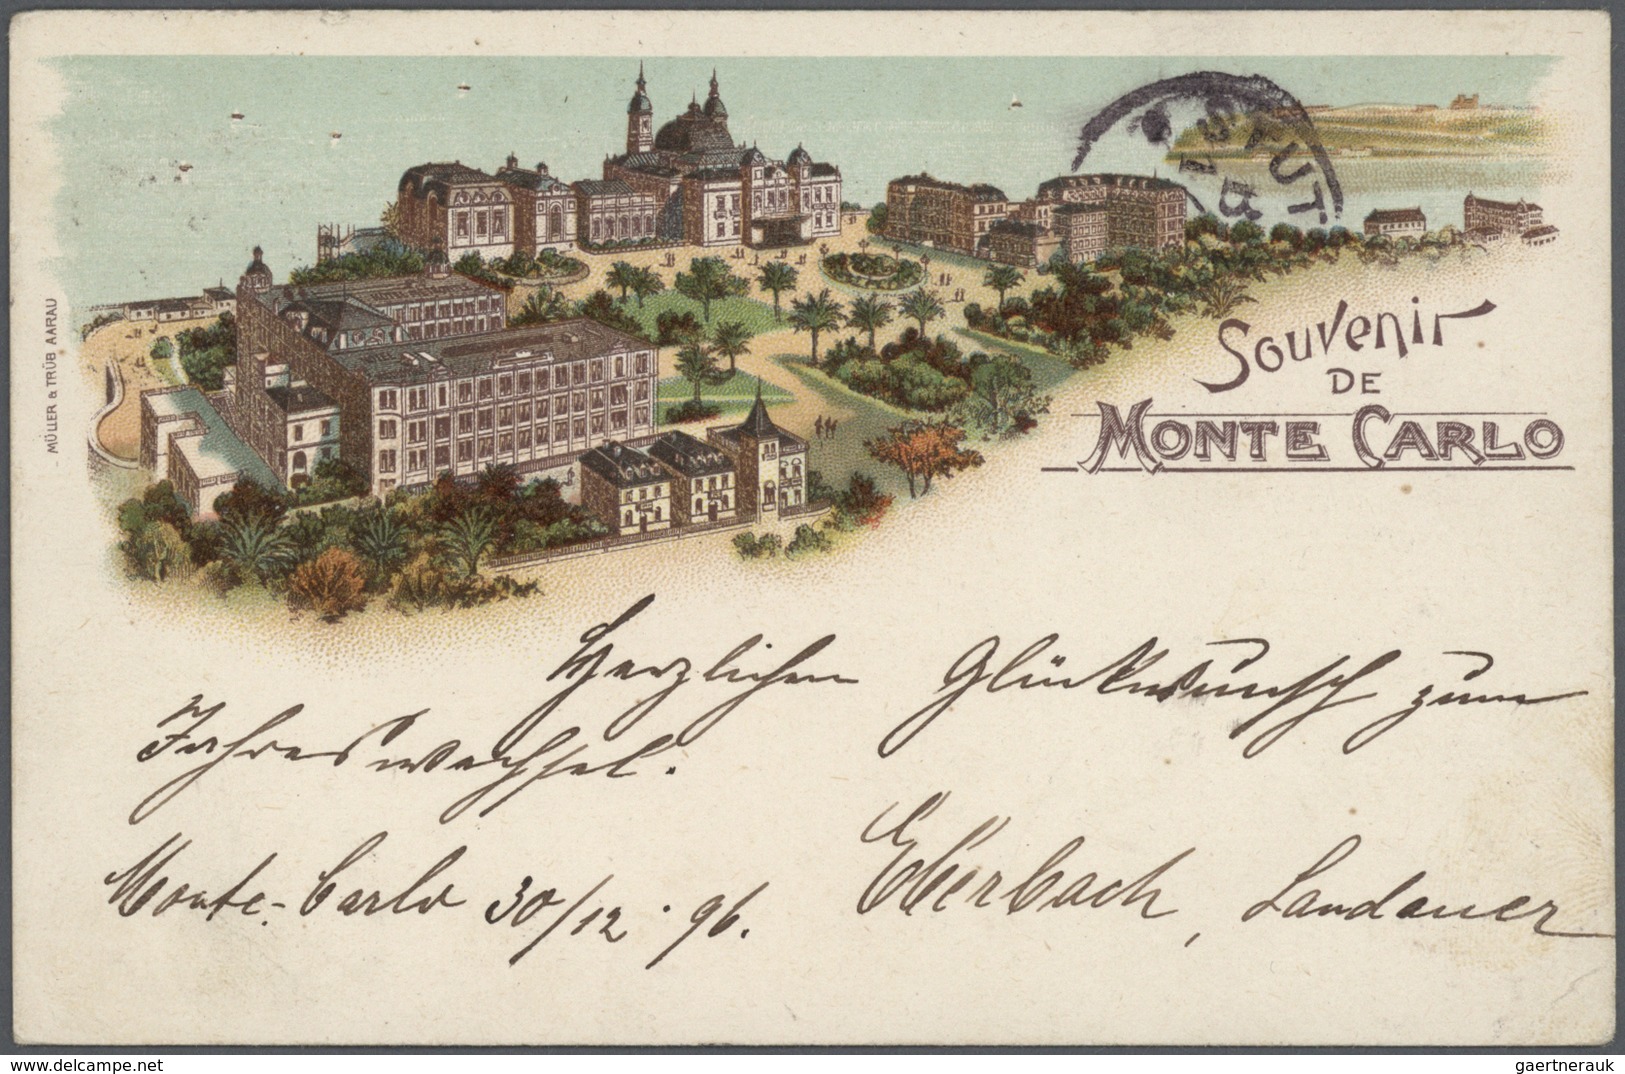 Monaco - Besonderheiten: 1895/1920, Stock of around 1,700 historical picture postcards in common com